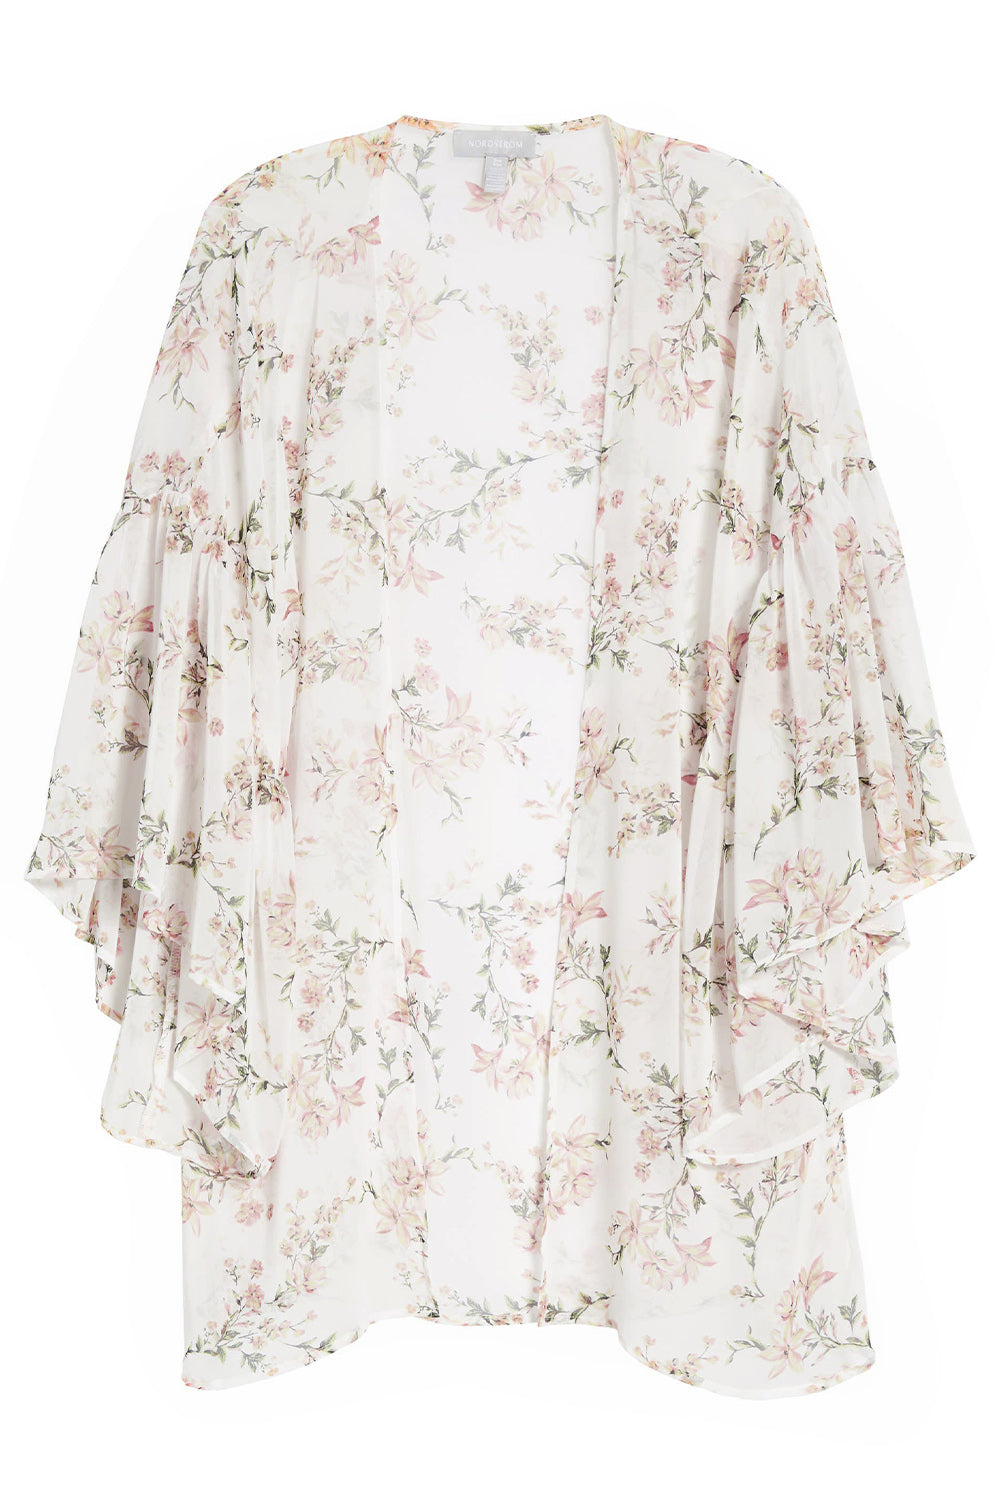 White Floral Print Ruffled Long Sleeves Kimono Kimonos JT's Designer Fashion